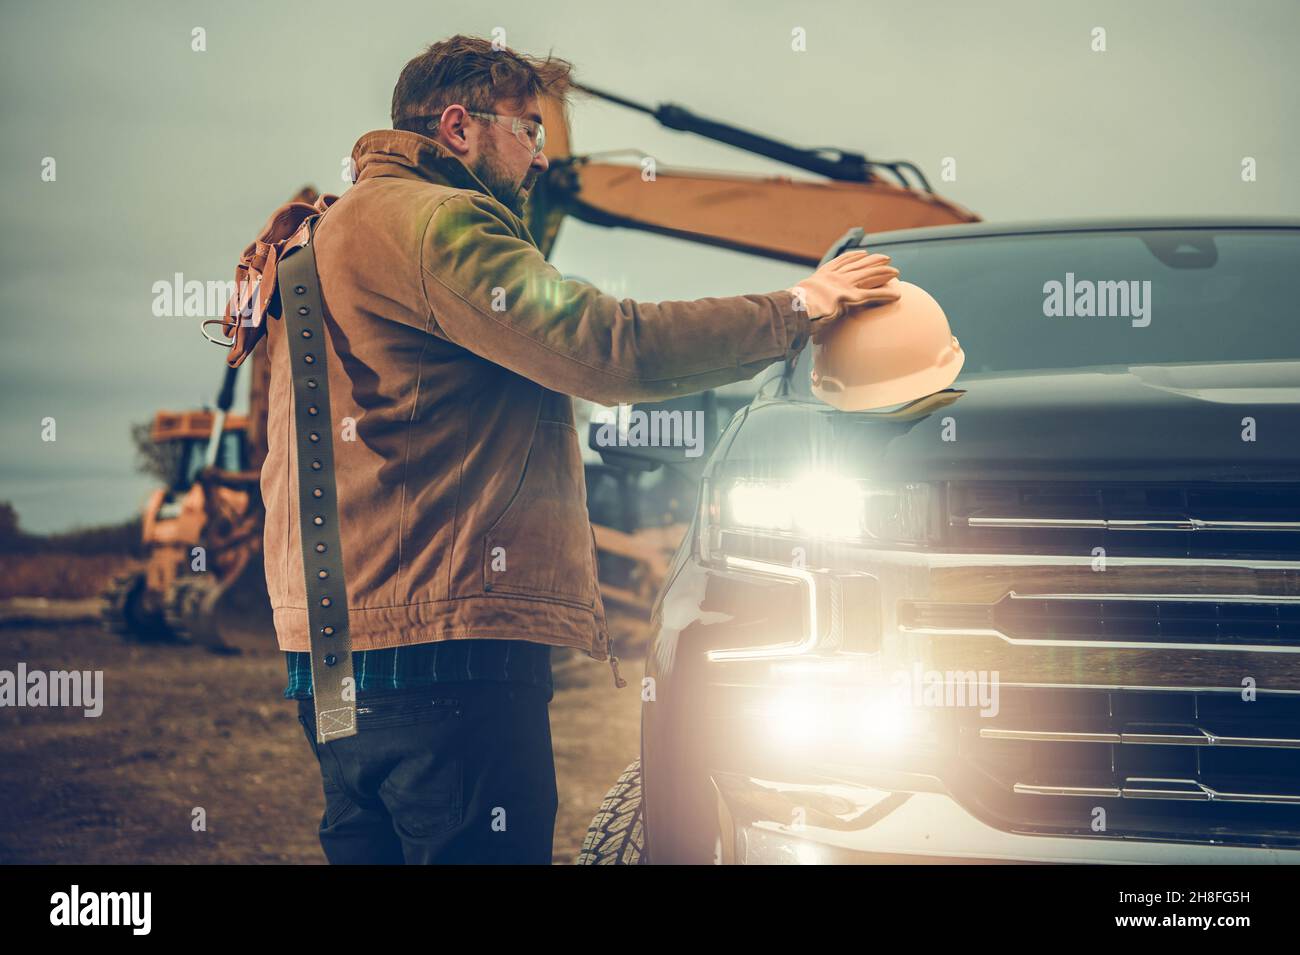 Bodenarbeiten Auftragnehmer Arbeiter Bagger Betreiber neben seinem Pickup Truck immer bereit für einen Job. Thema Bauindustrie. Stockfoto